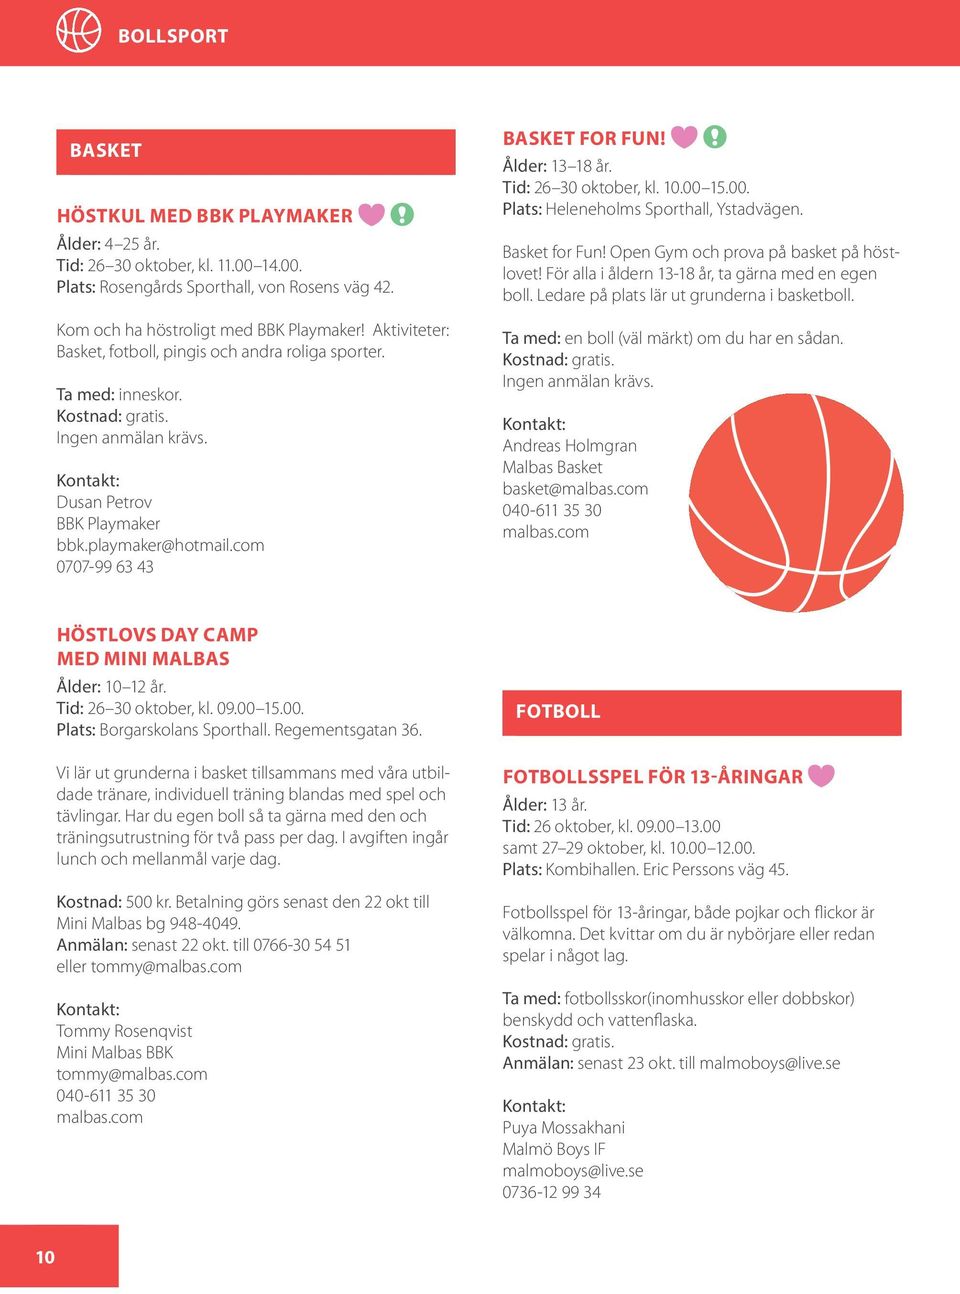 Tid: 26 30 oktober, kl. 10.00 15.00. Plats: Heleneholms Sporthall, Ystadvägen. Basket for Fun! Open Gym och prova på basket på höstlovet! För alla i åldern 13-18 år, ta gärna med en egen boll.